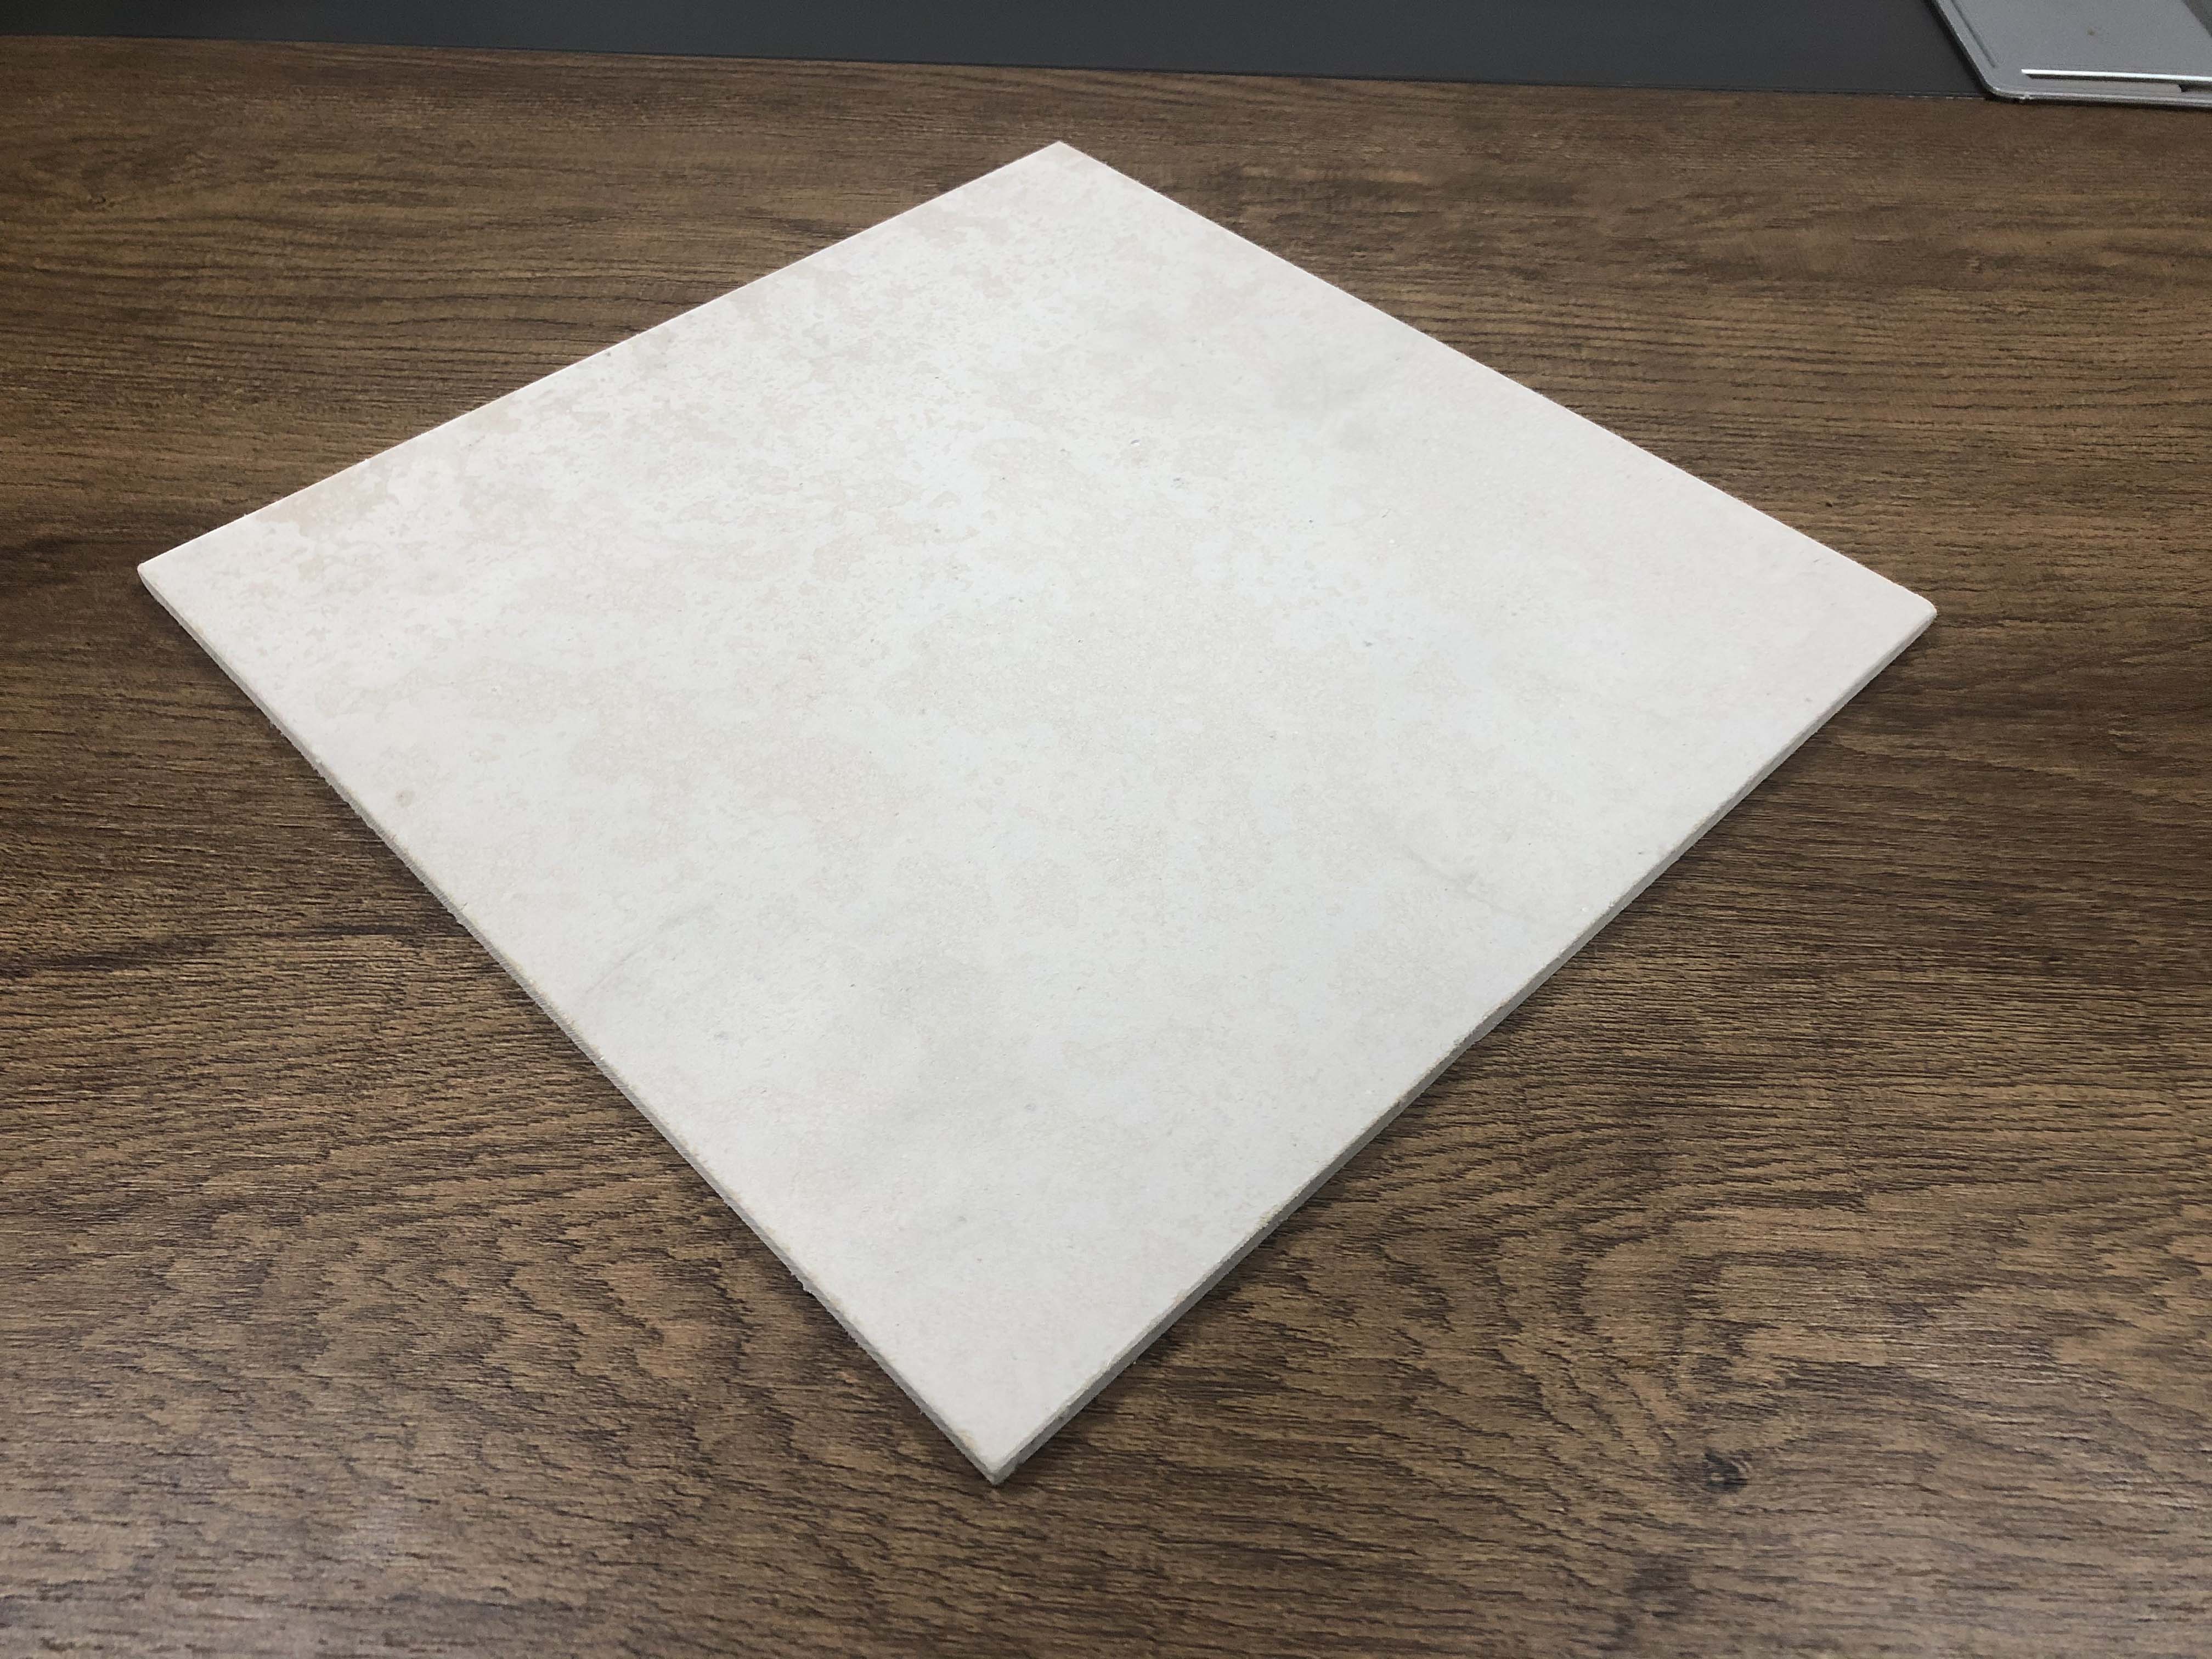 20mm的硅酸钙板能做成弧弯板吗？